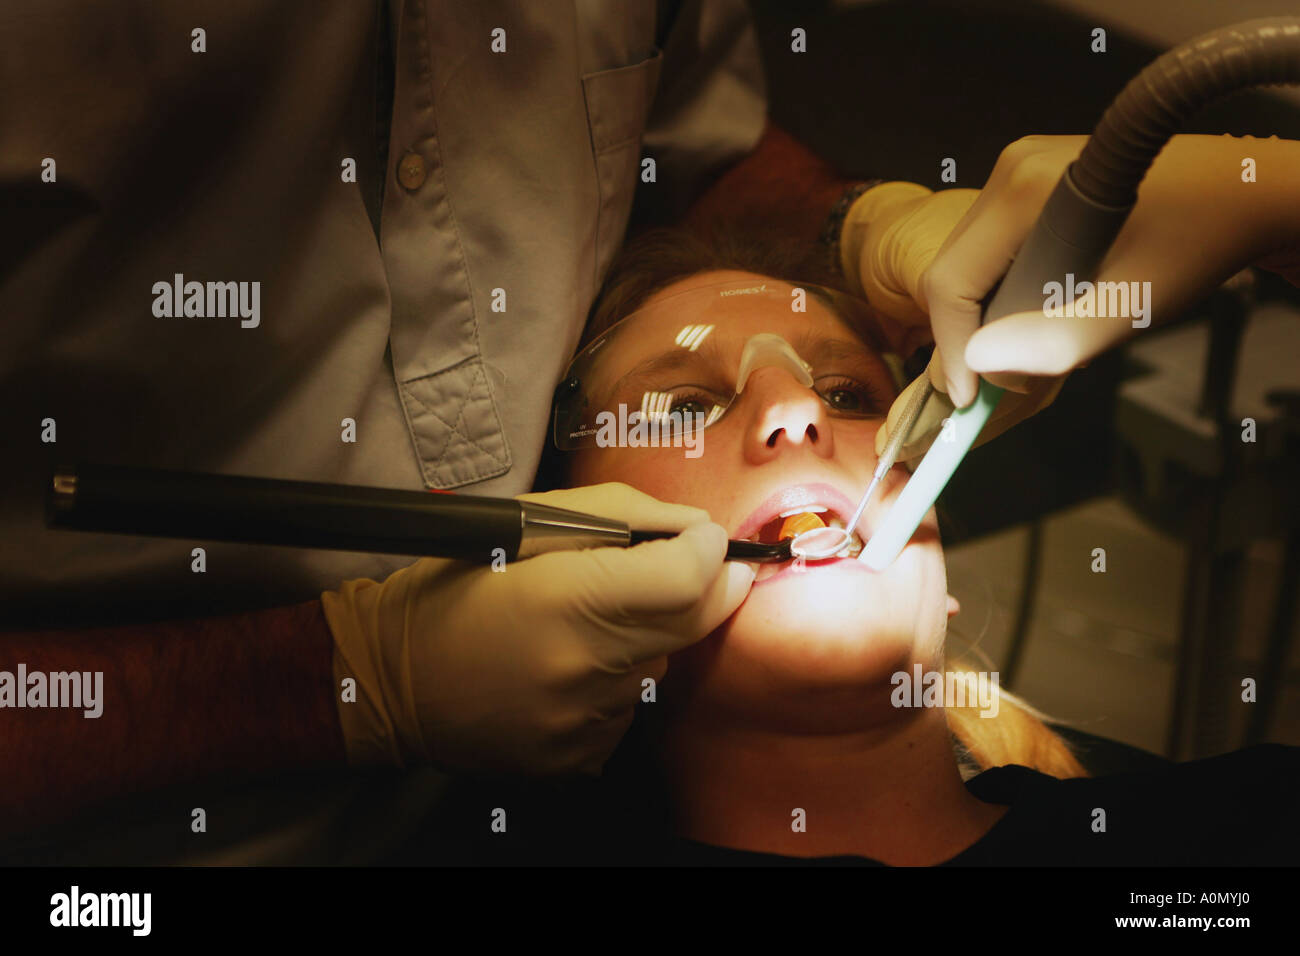 Zahnärztliche Behandlung in einem Zahnarzt-Stuhl - Zahnarzt Stockfoto